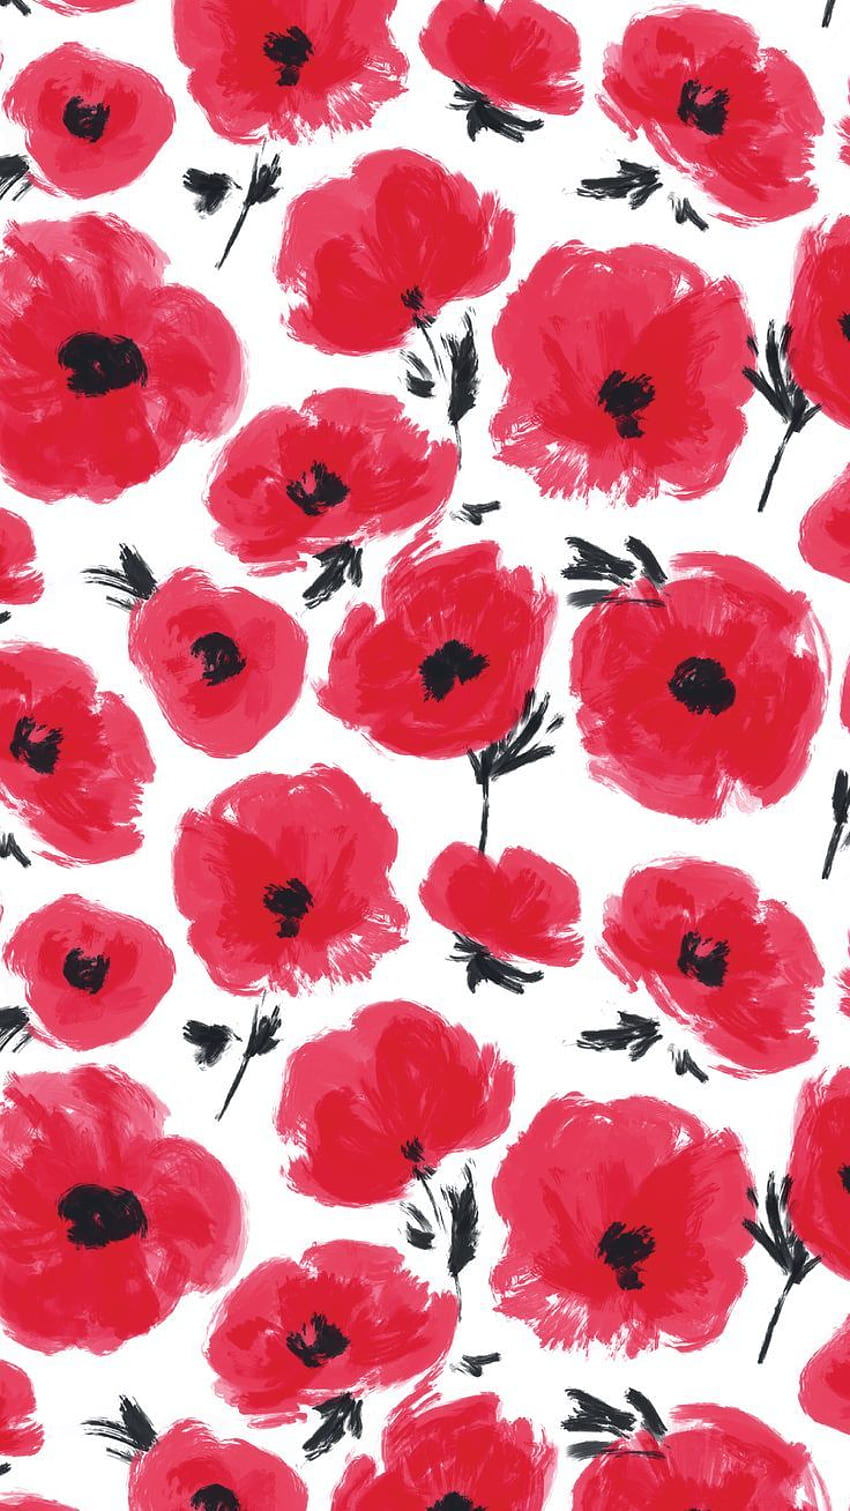 Red Poppies Phone ::Klicken Sie hier, um cool zu bleiben: Red Poppi. Blumen iphone, Mohn, Blume, süßes Rot HD-Handy-Hintergrundbild